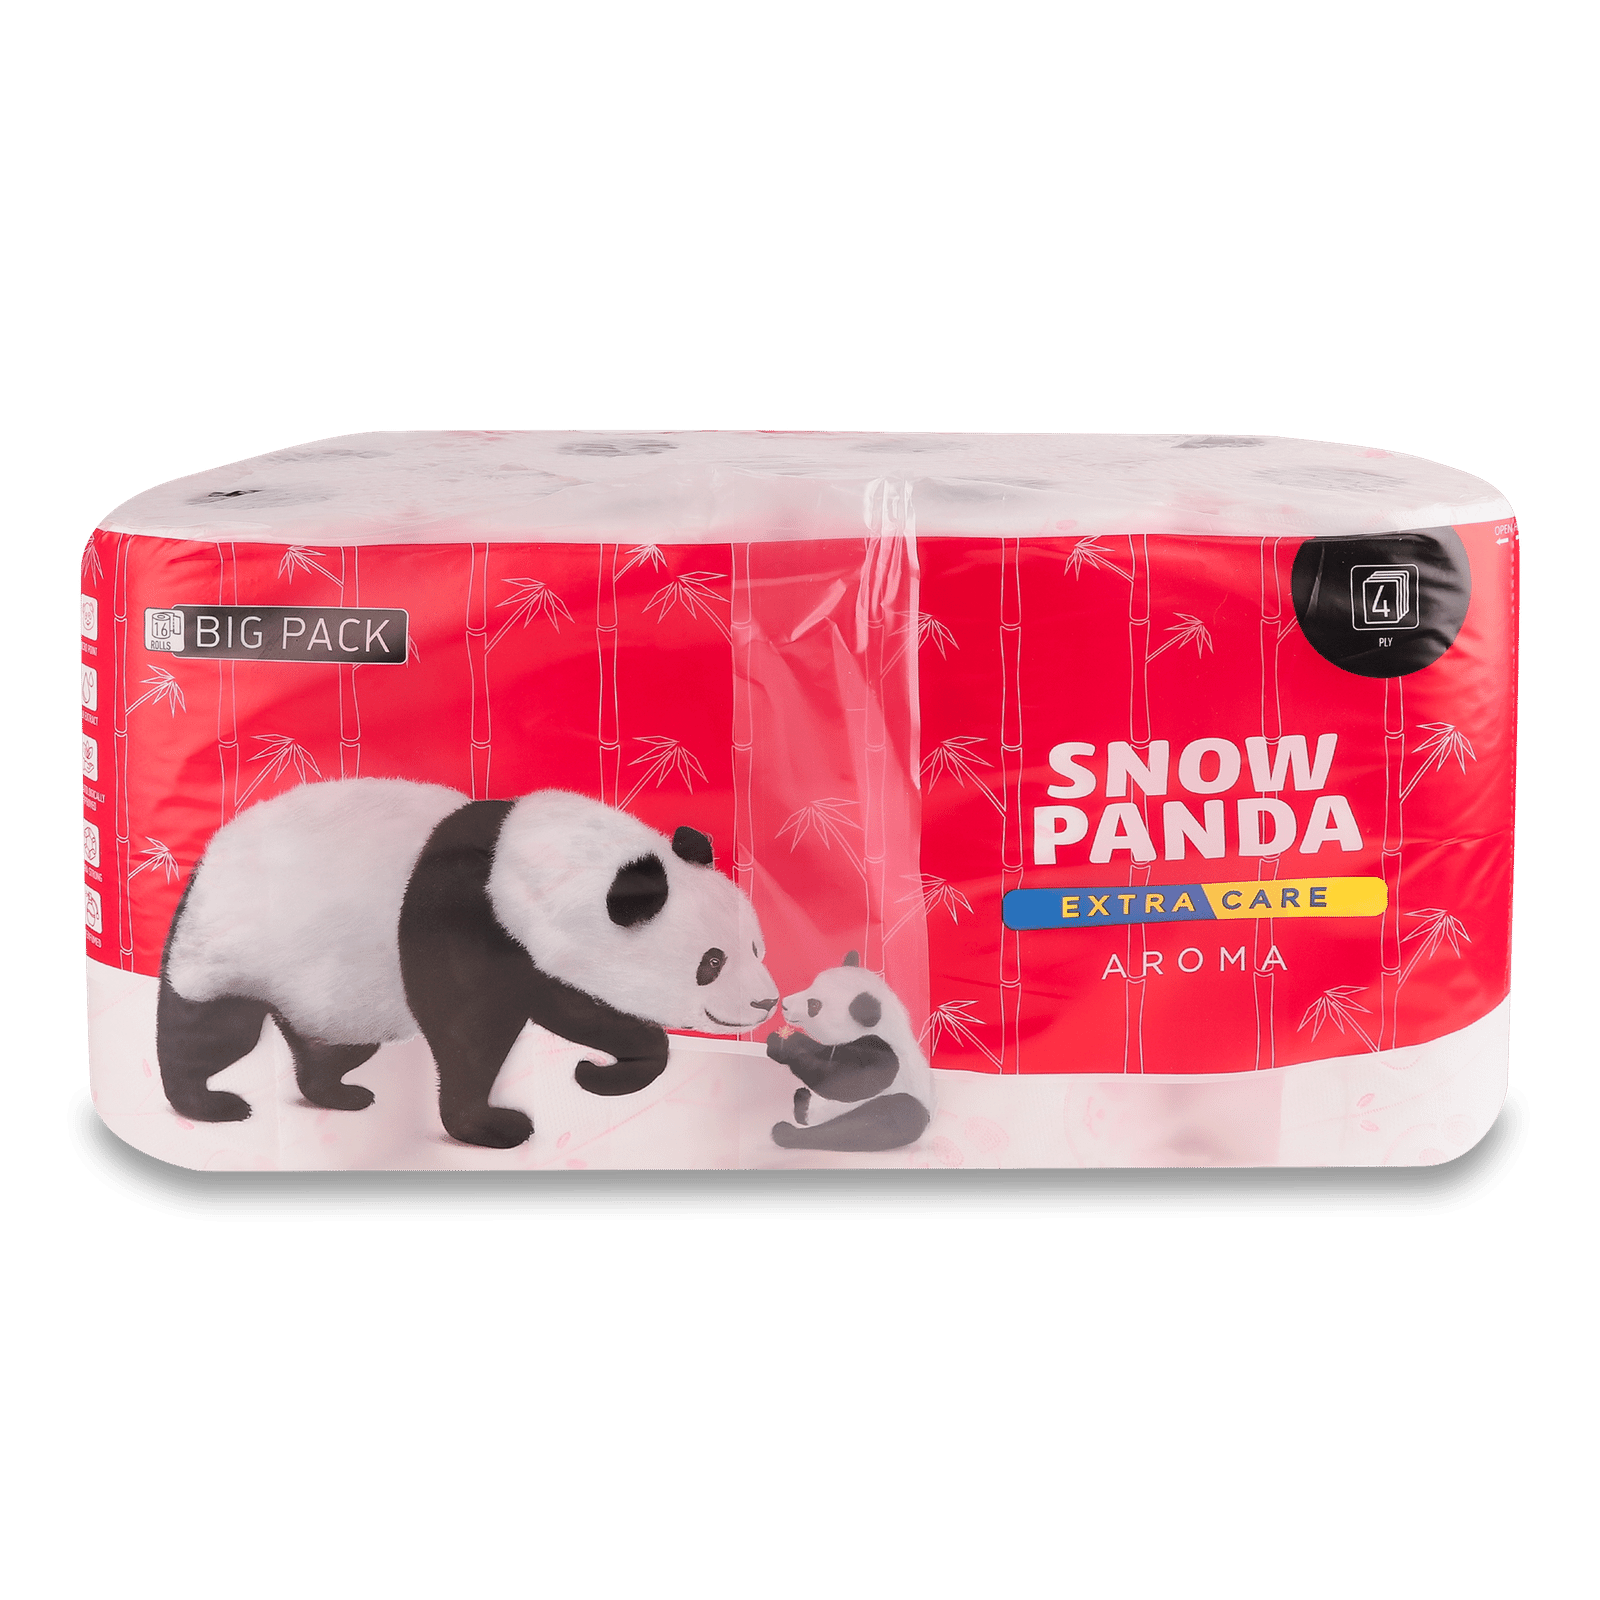 Папір туалетний «Сніжна панда» Extra Care Aroma - 1